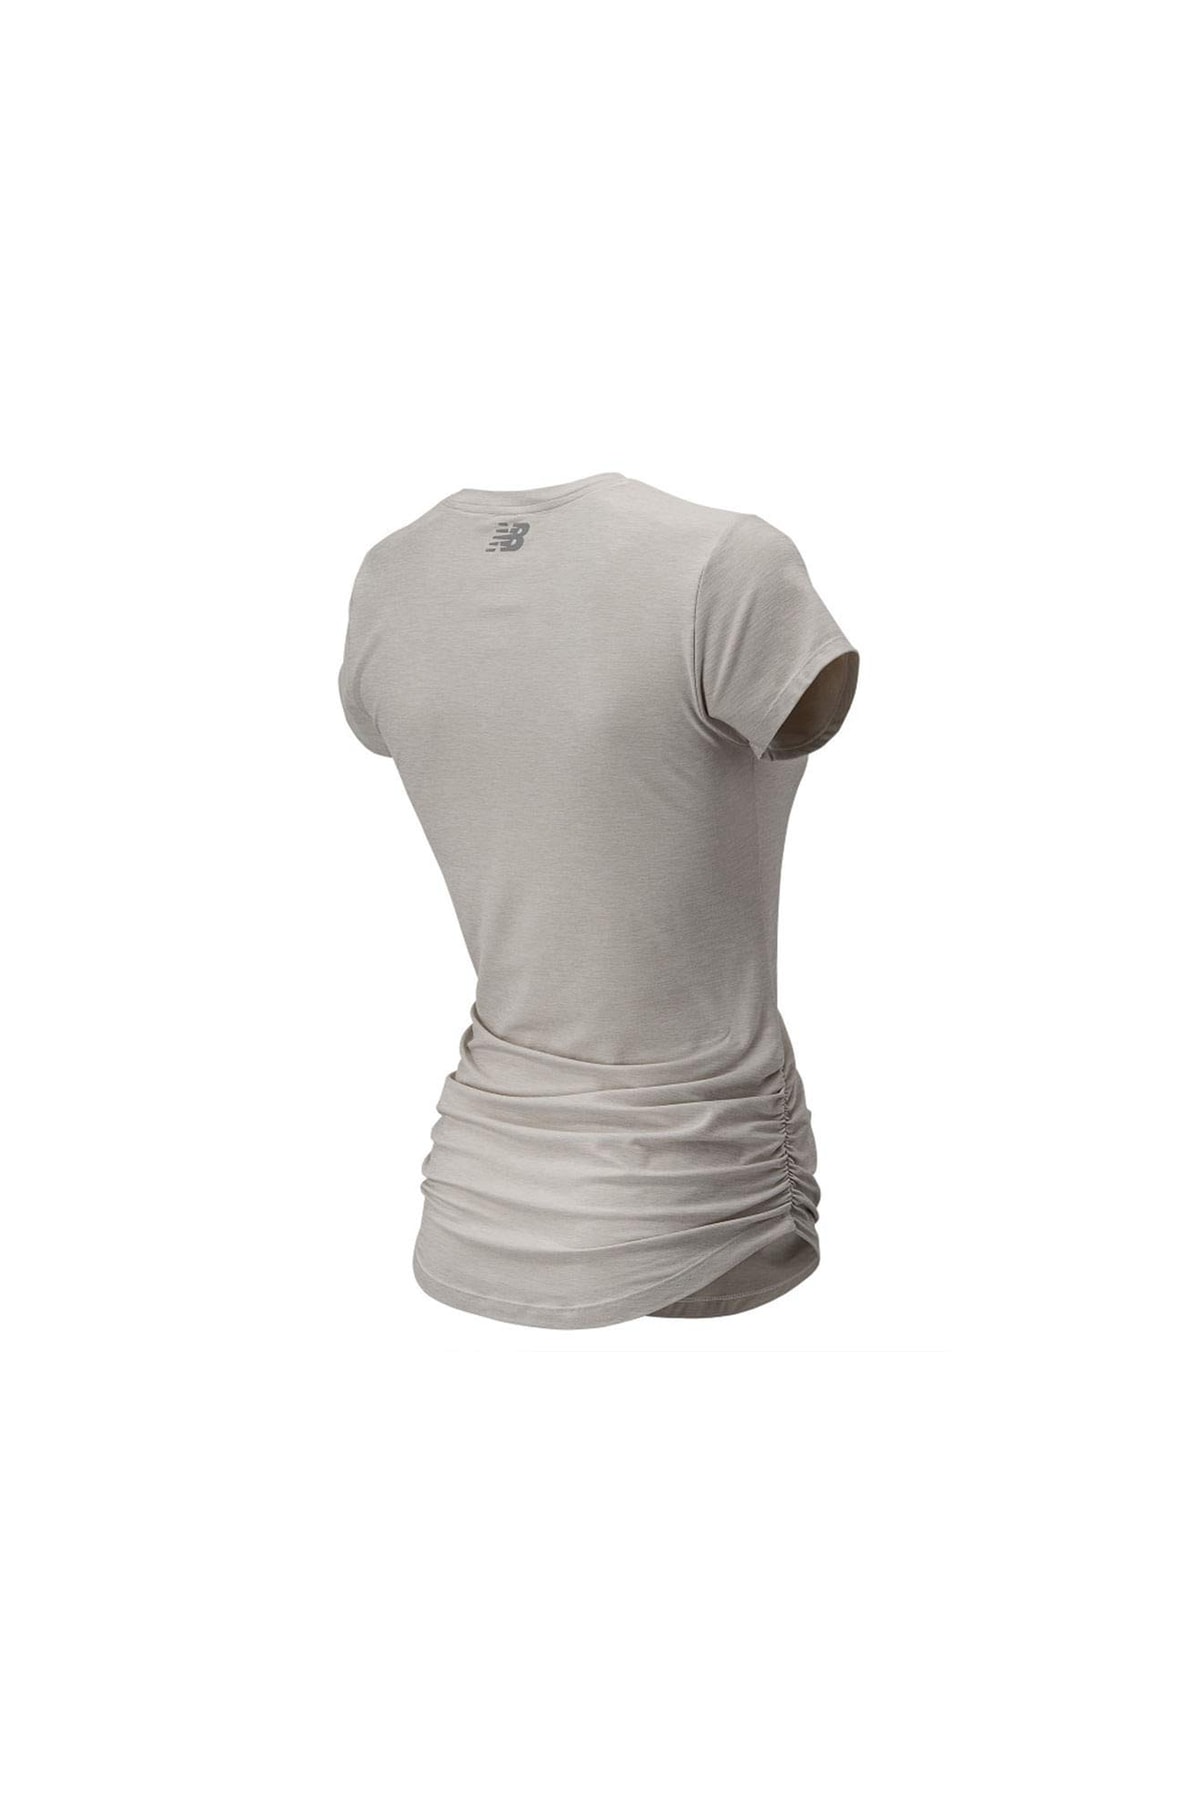 New Balance Hemd Grau Regular Fit Fast ausverkauft